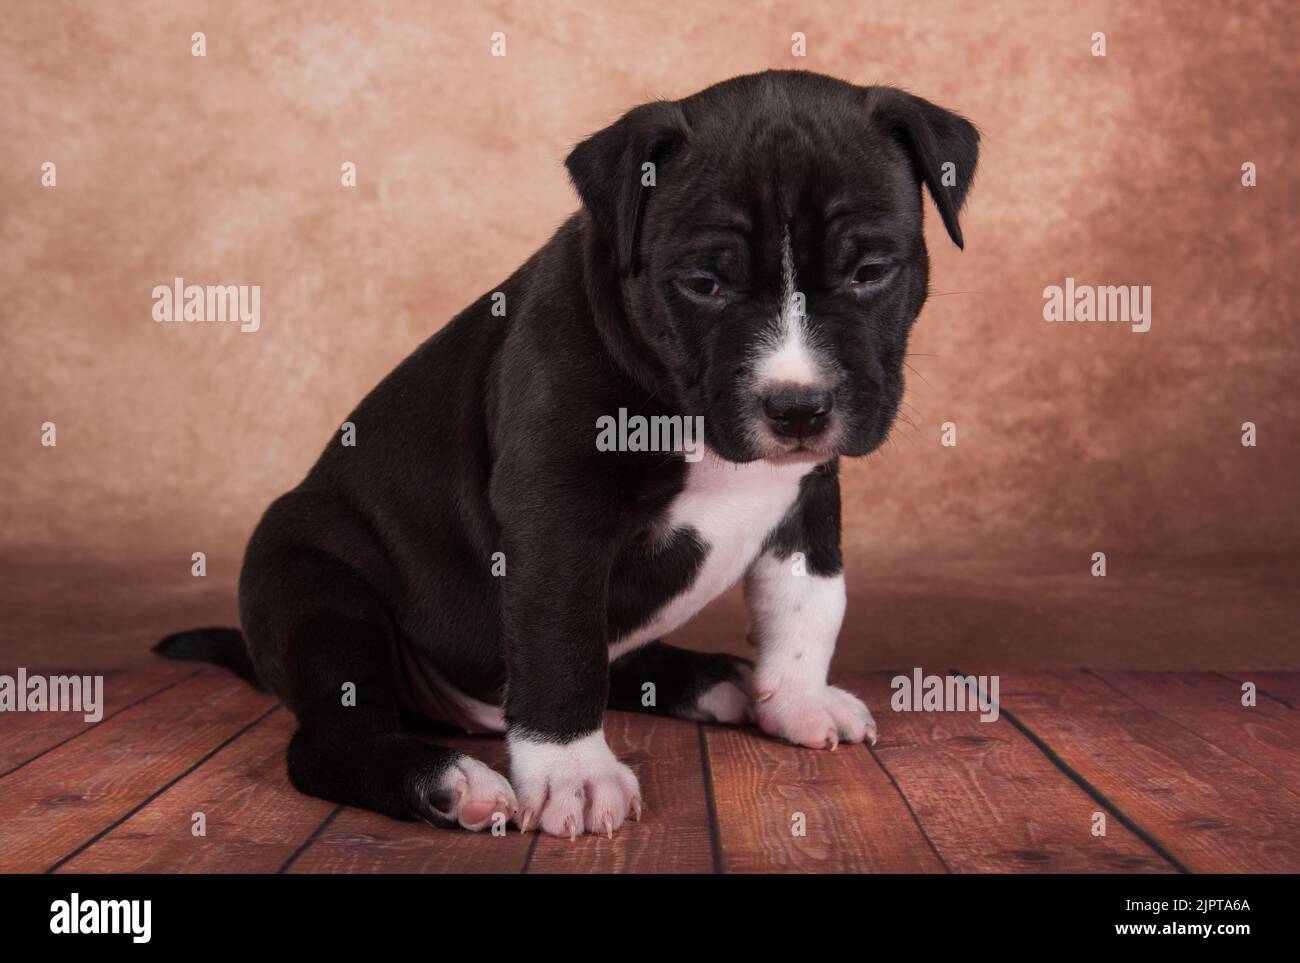 Nero e bianco americano Staffordshire Terrier cane o AmStaff cucciolo su sfondo marrone Foto Stock